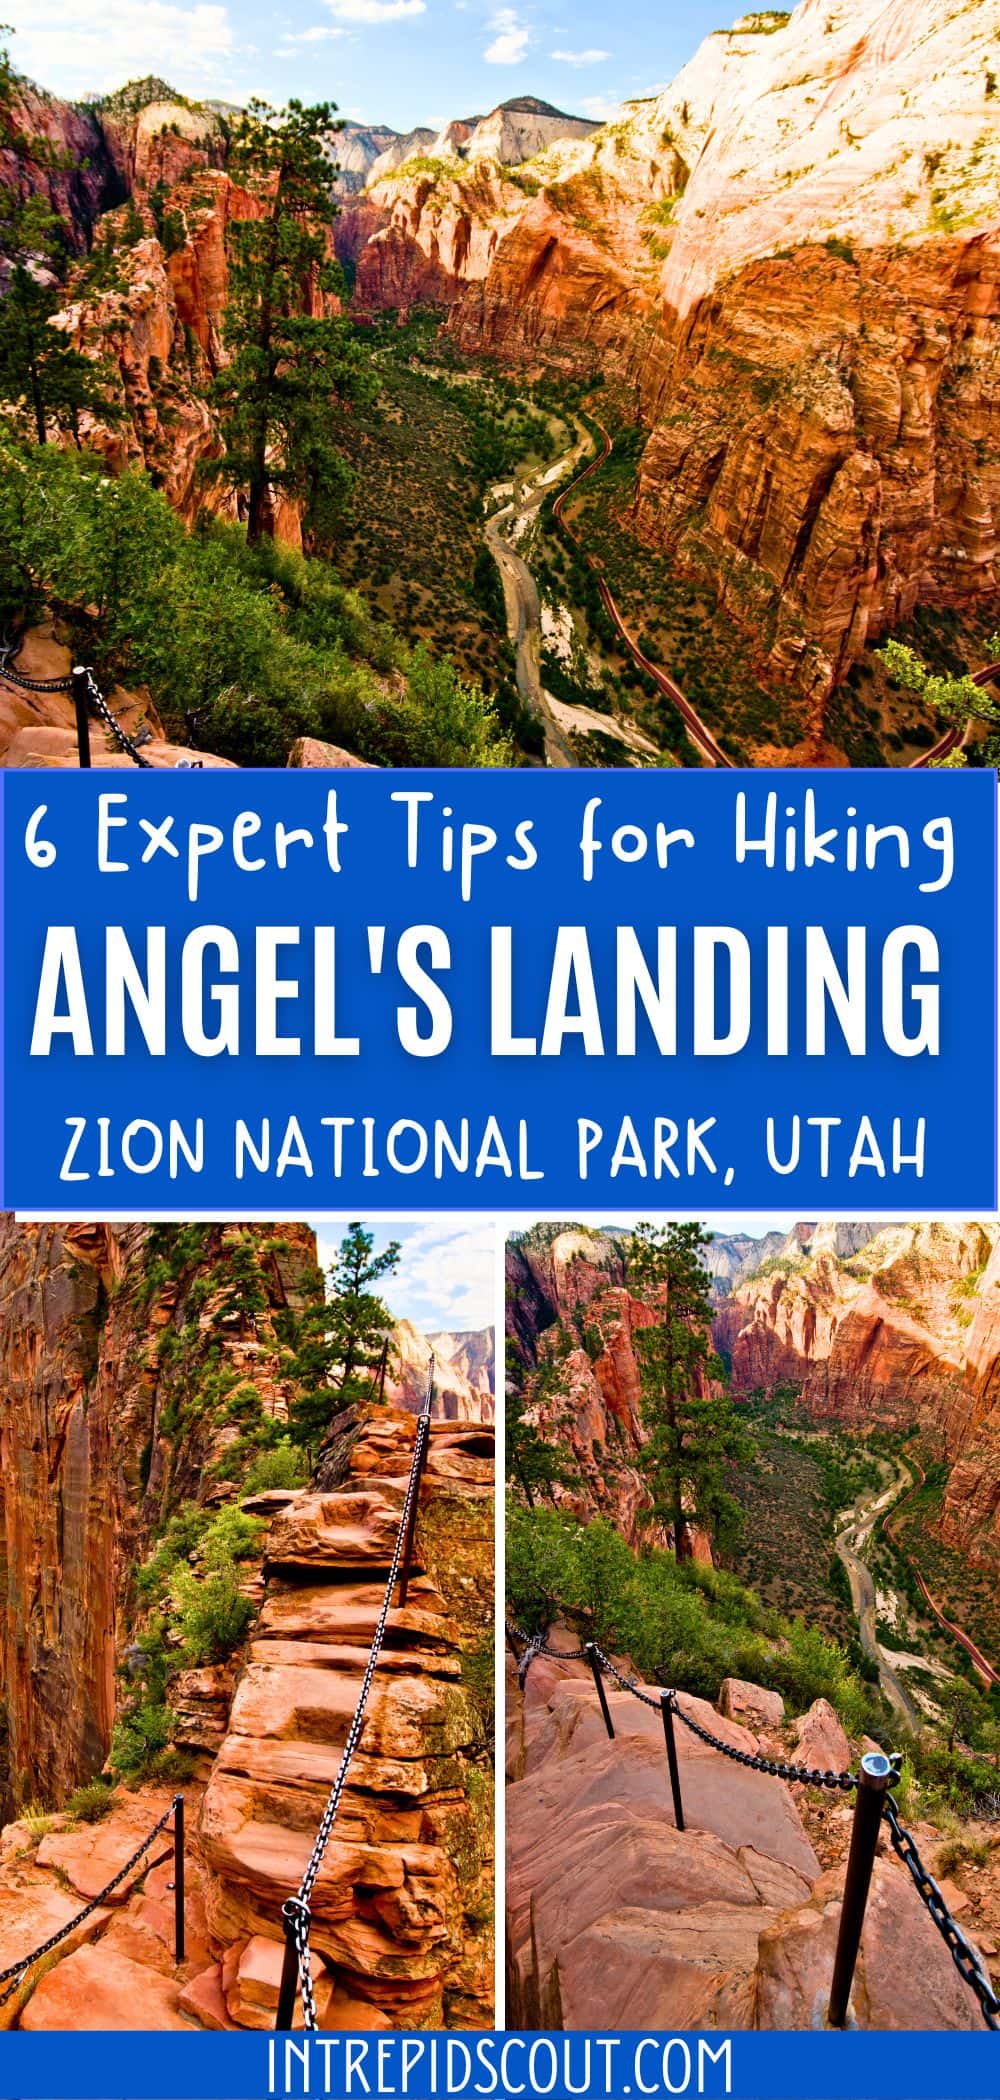 Tips for Angel's Landing Hike